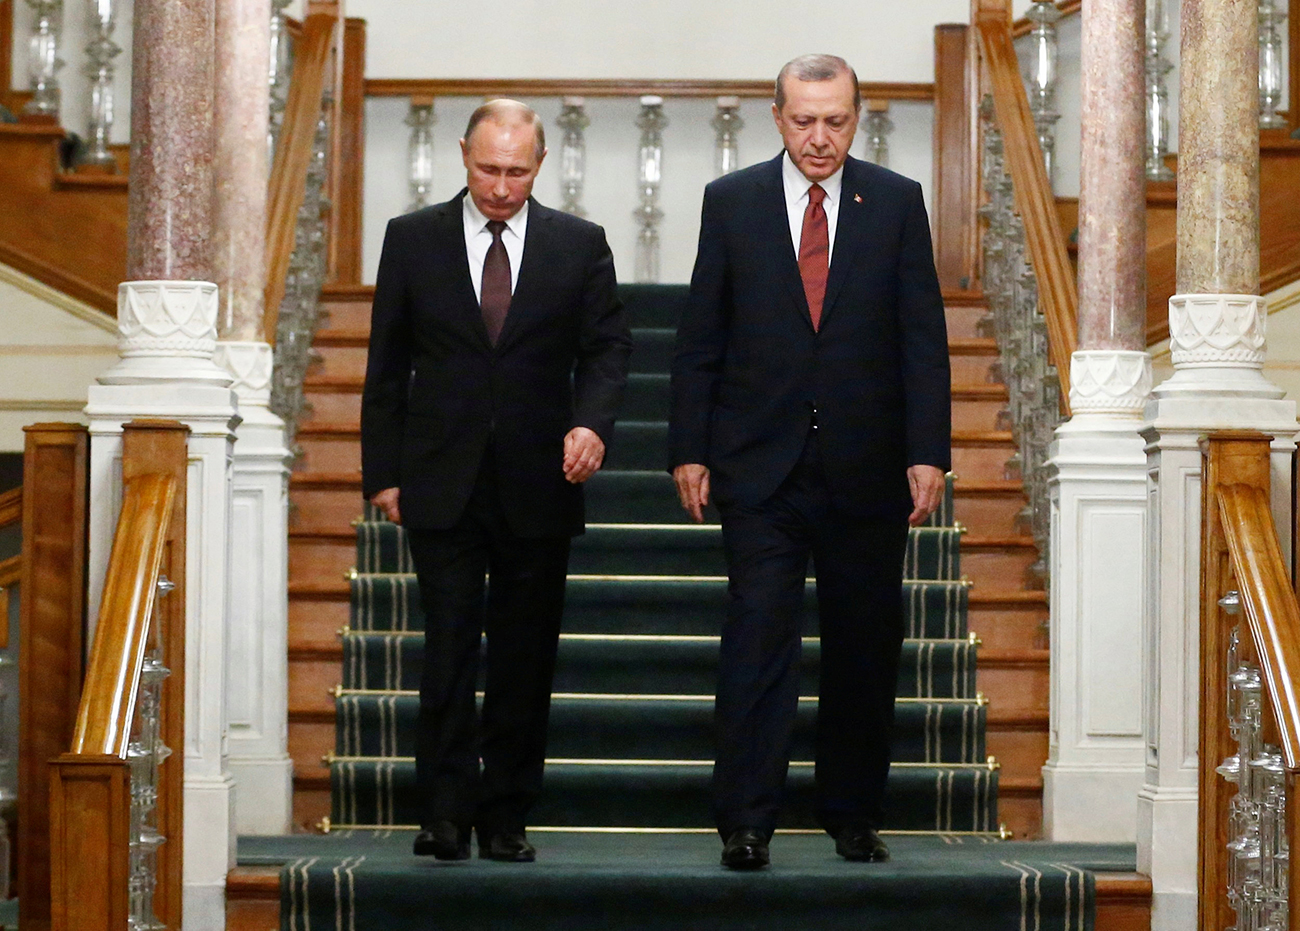 Ruski predsednik Vladimir Putin in turški predsednik Recep Tayyip Erdogan prihajata na tiskovno konferenco po srečanju v Istanbulu 10. oktobra 2016. Vir: Reuters